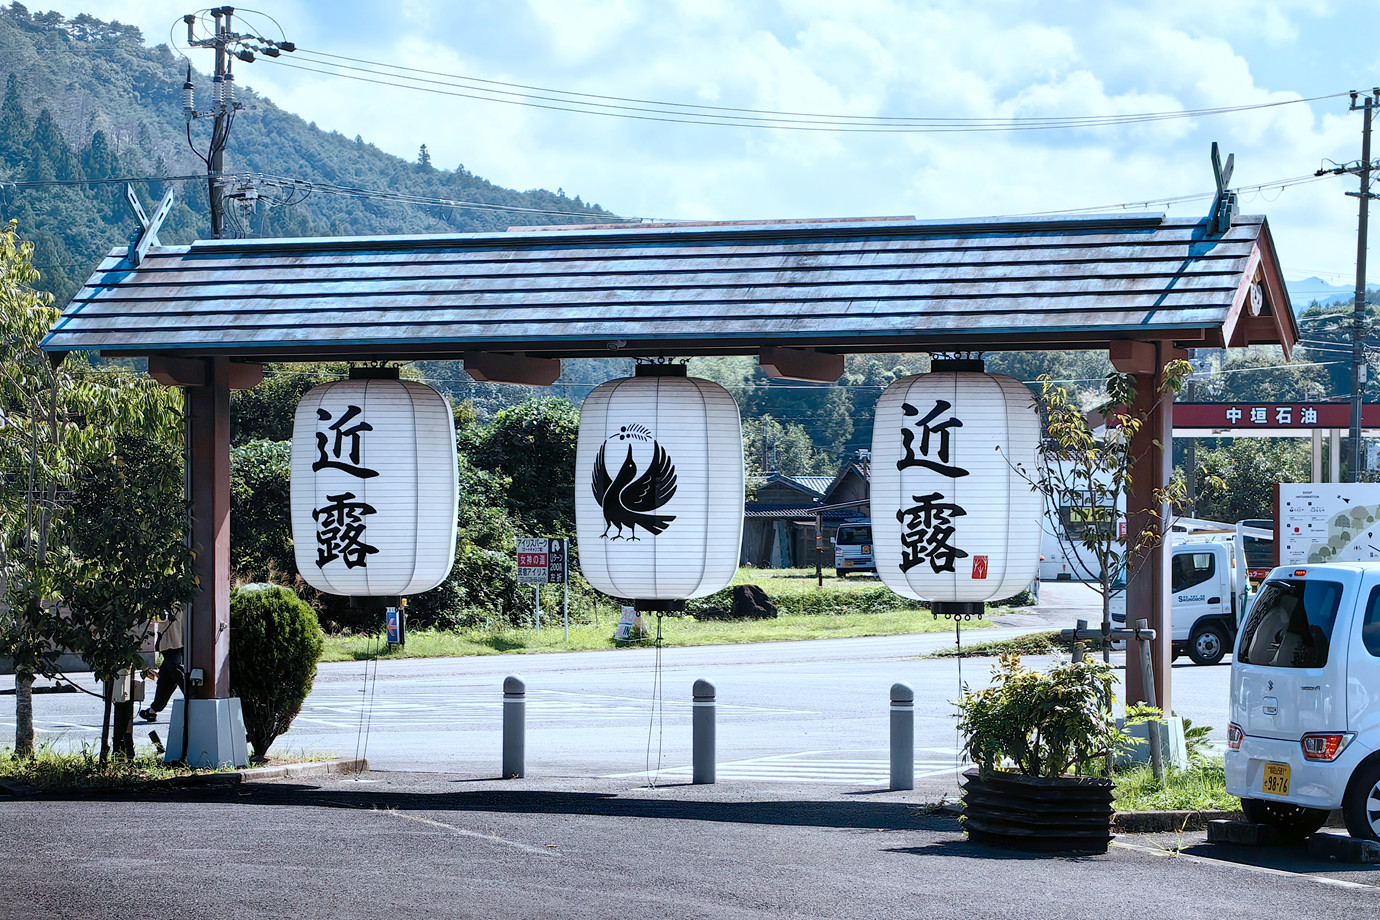 和歌山-熊野古道中邊路 (近露王子)